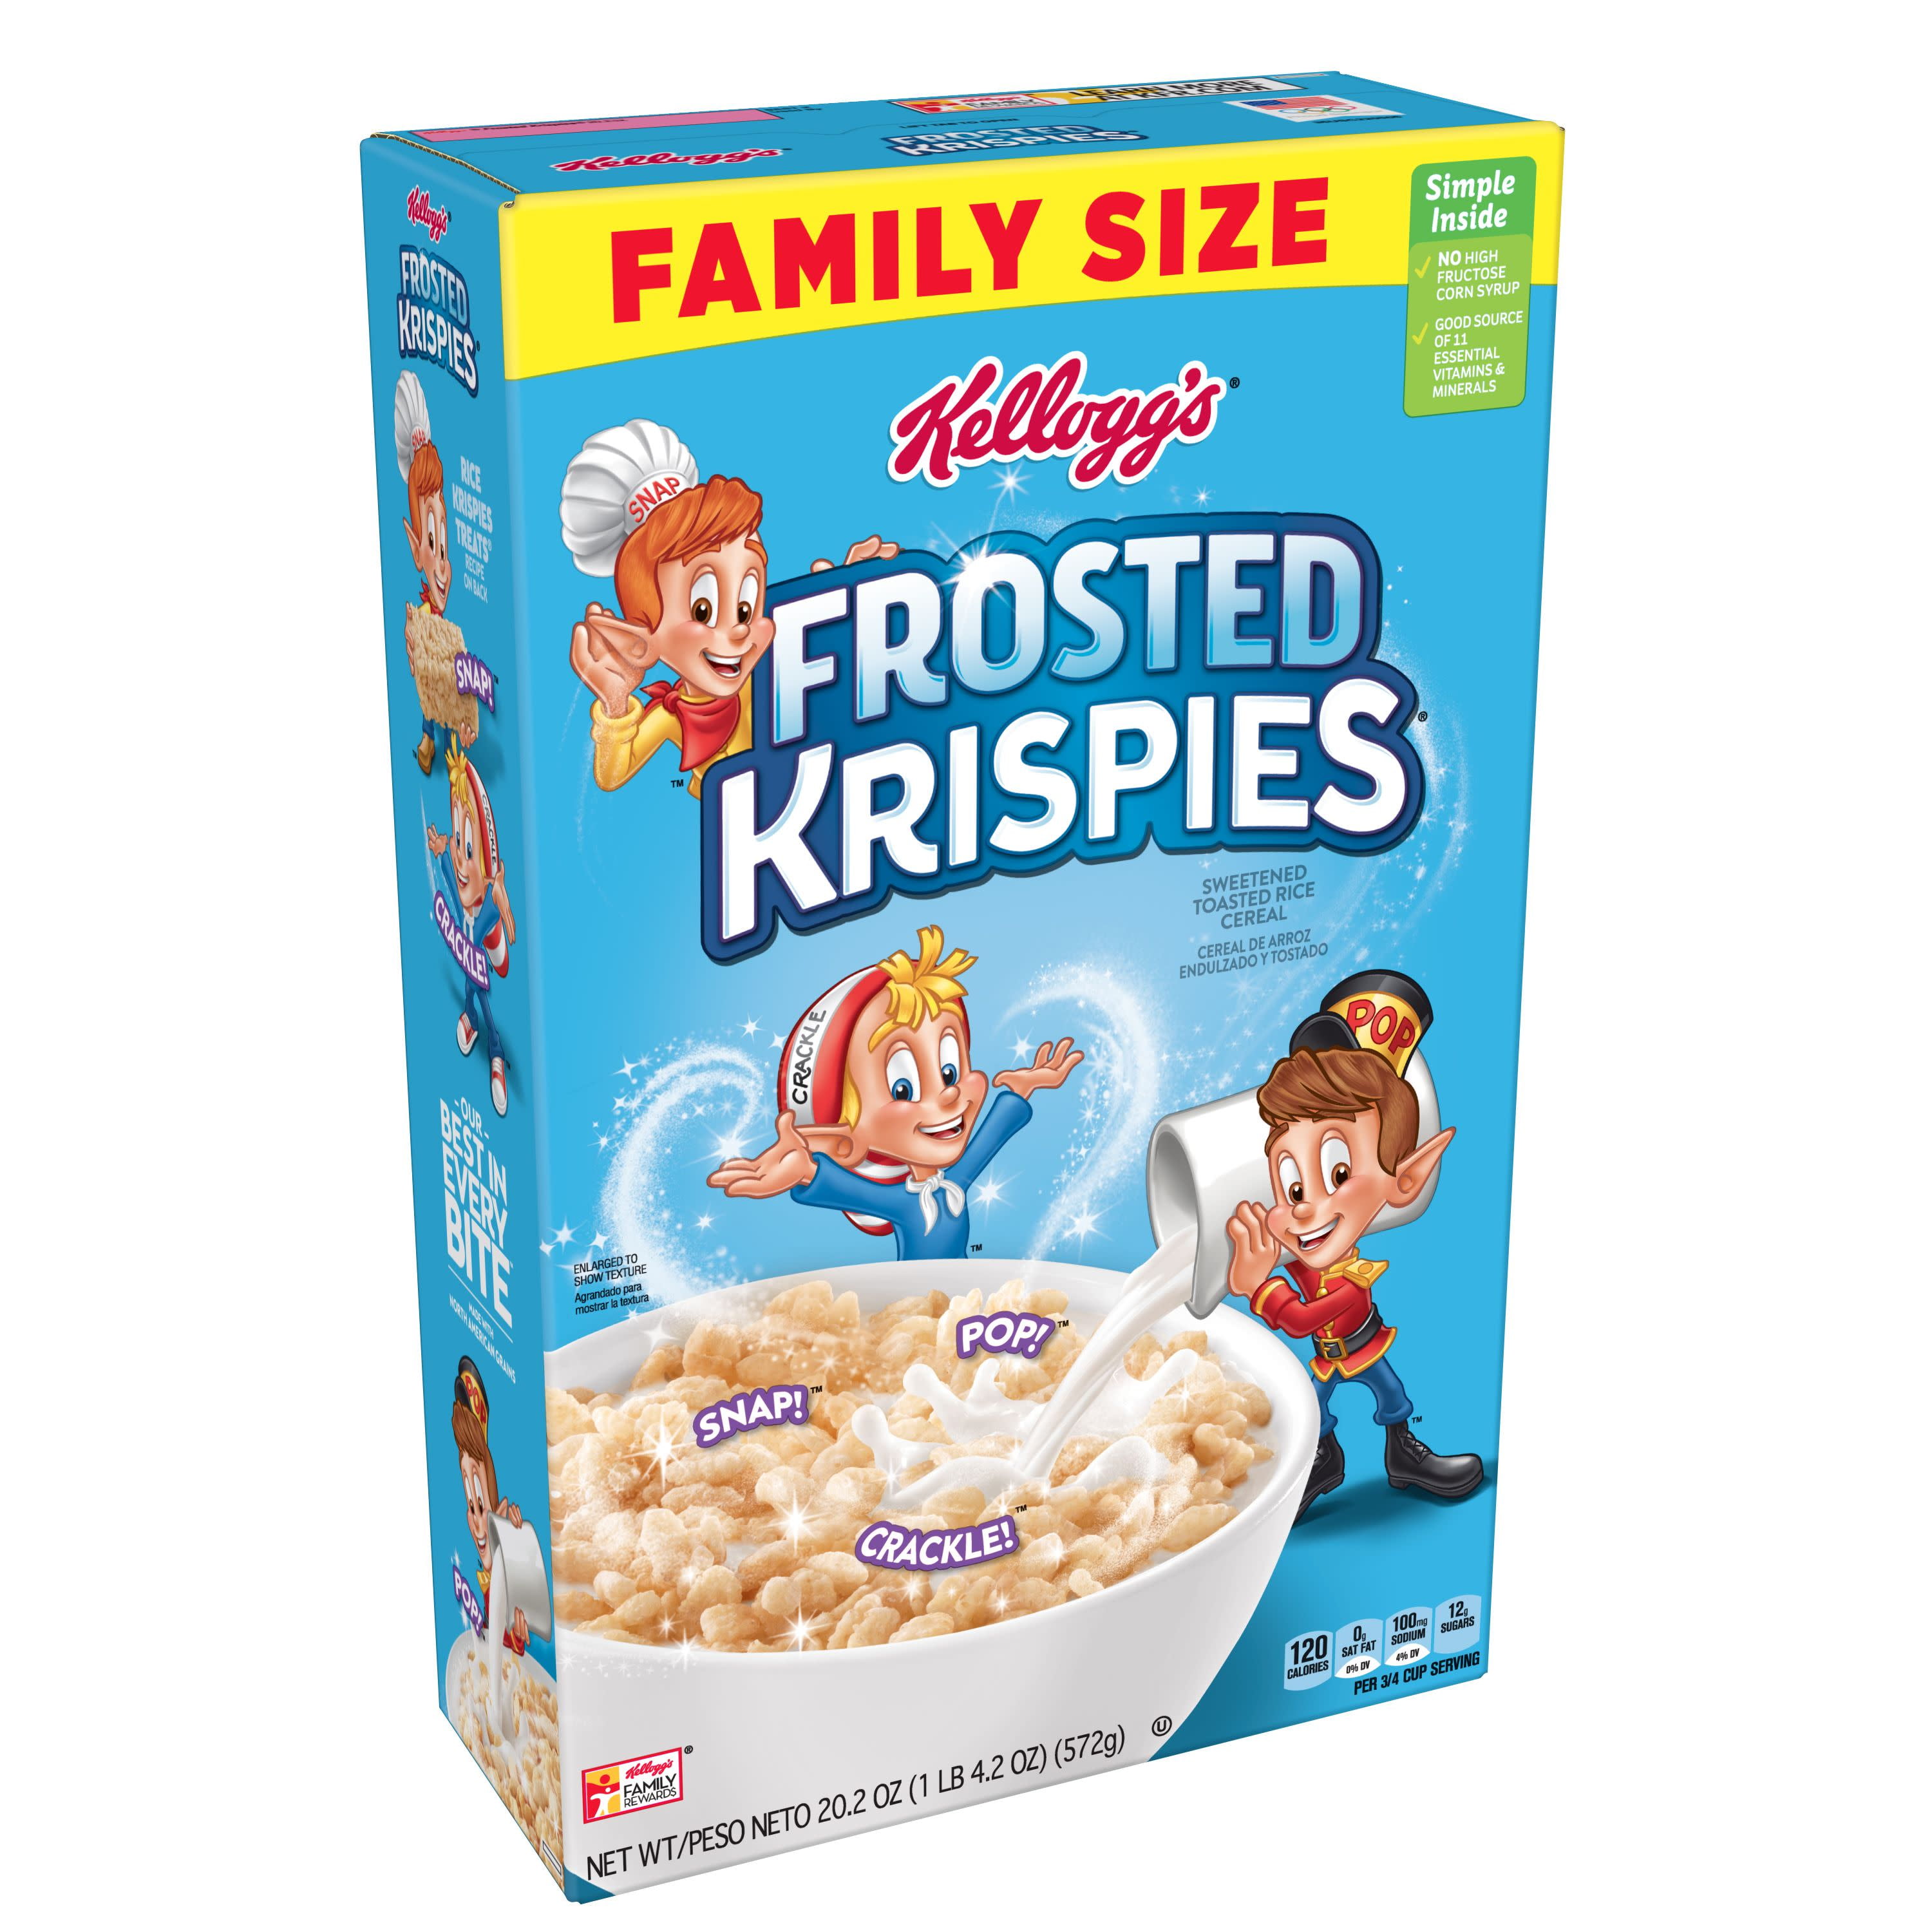 Kellogg's Breakfast Cereals